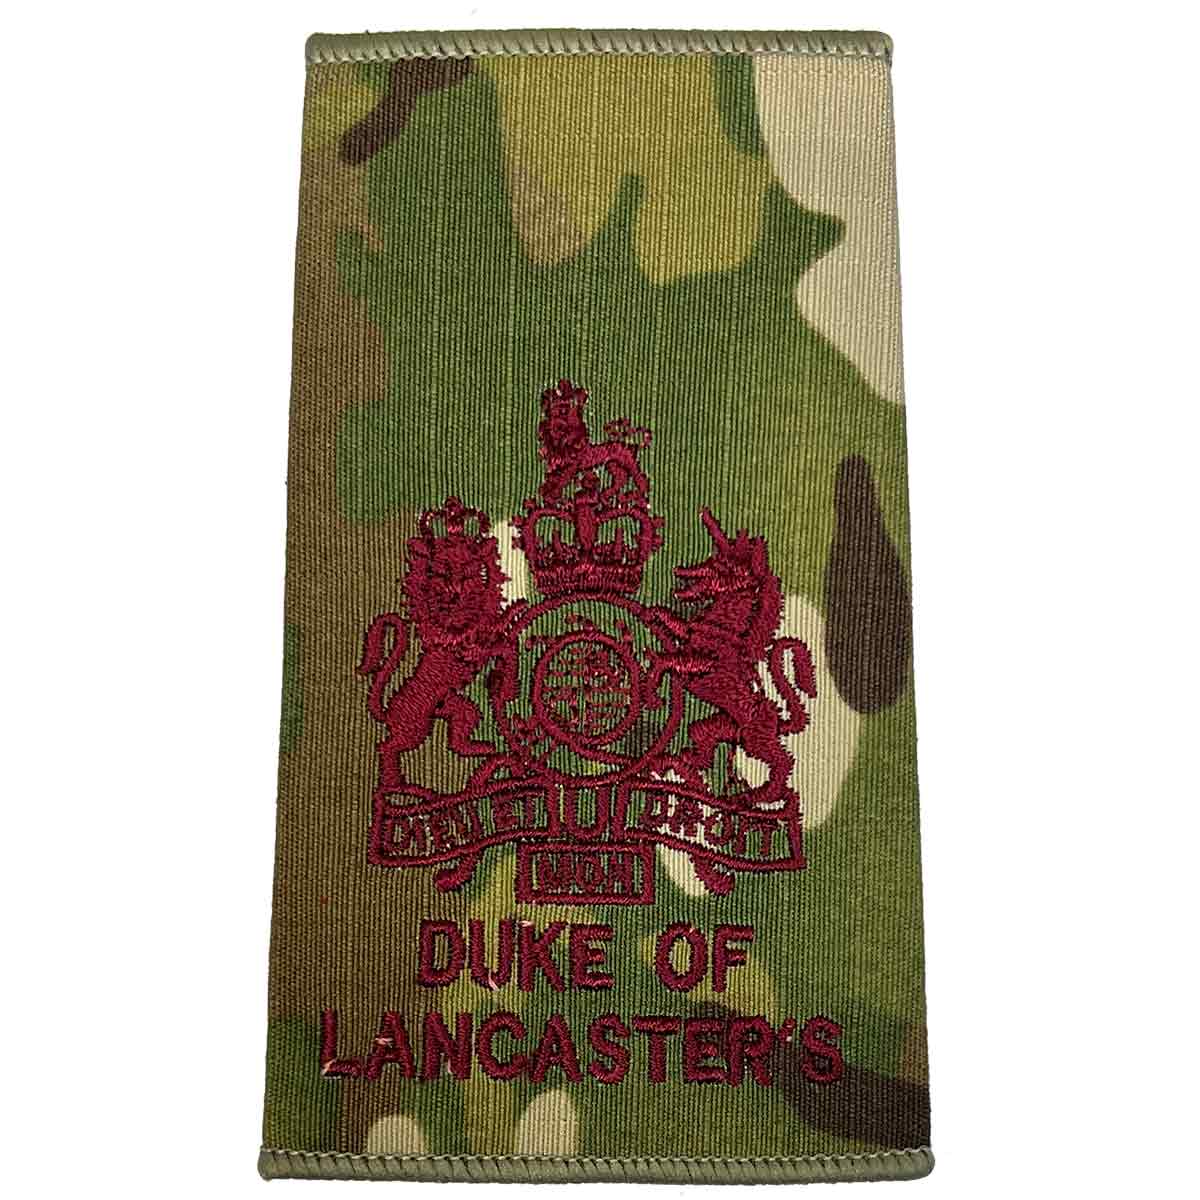 Duke of Lancasters Multicam Rank Slides (Pair) - John Bull Clothing